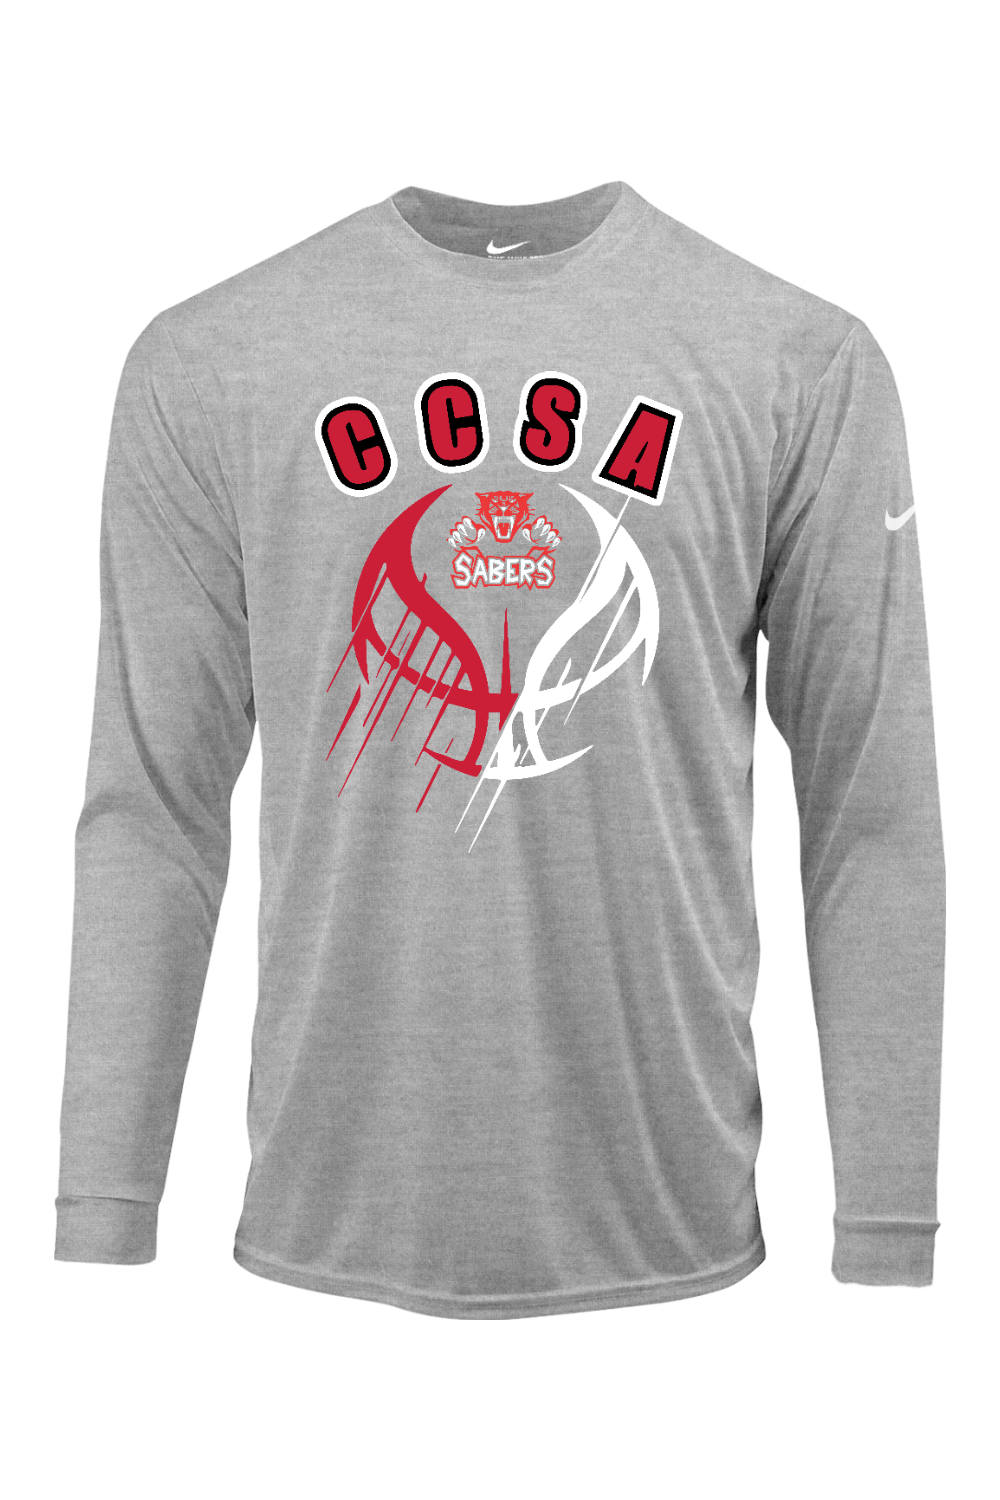 CCSA Basketball Nike Core Cotton Long Sleeve Tee